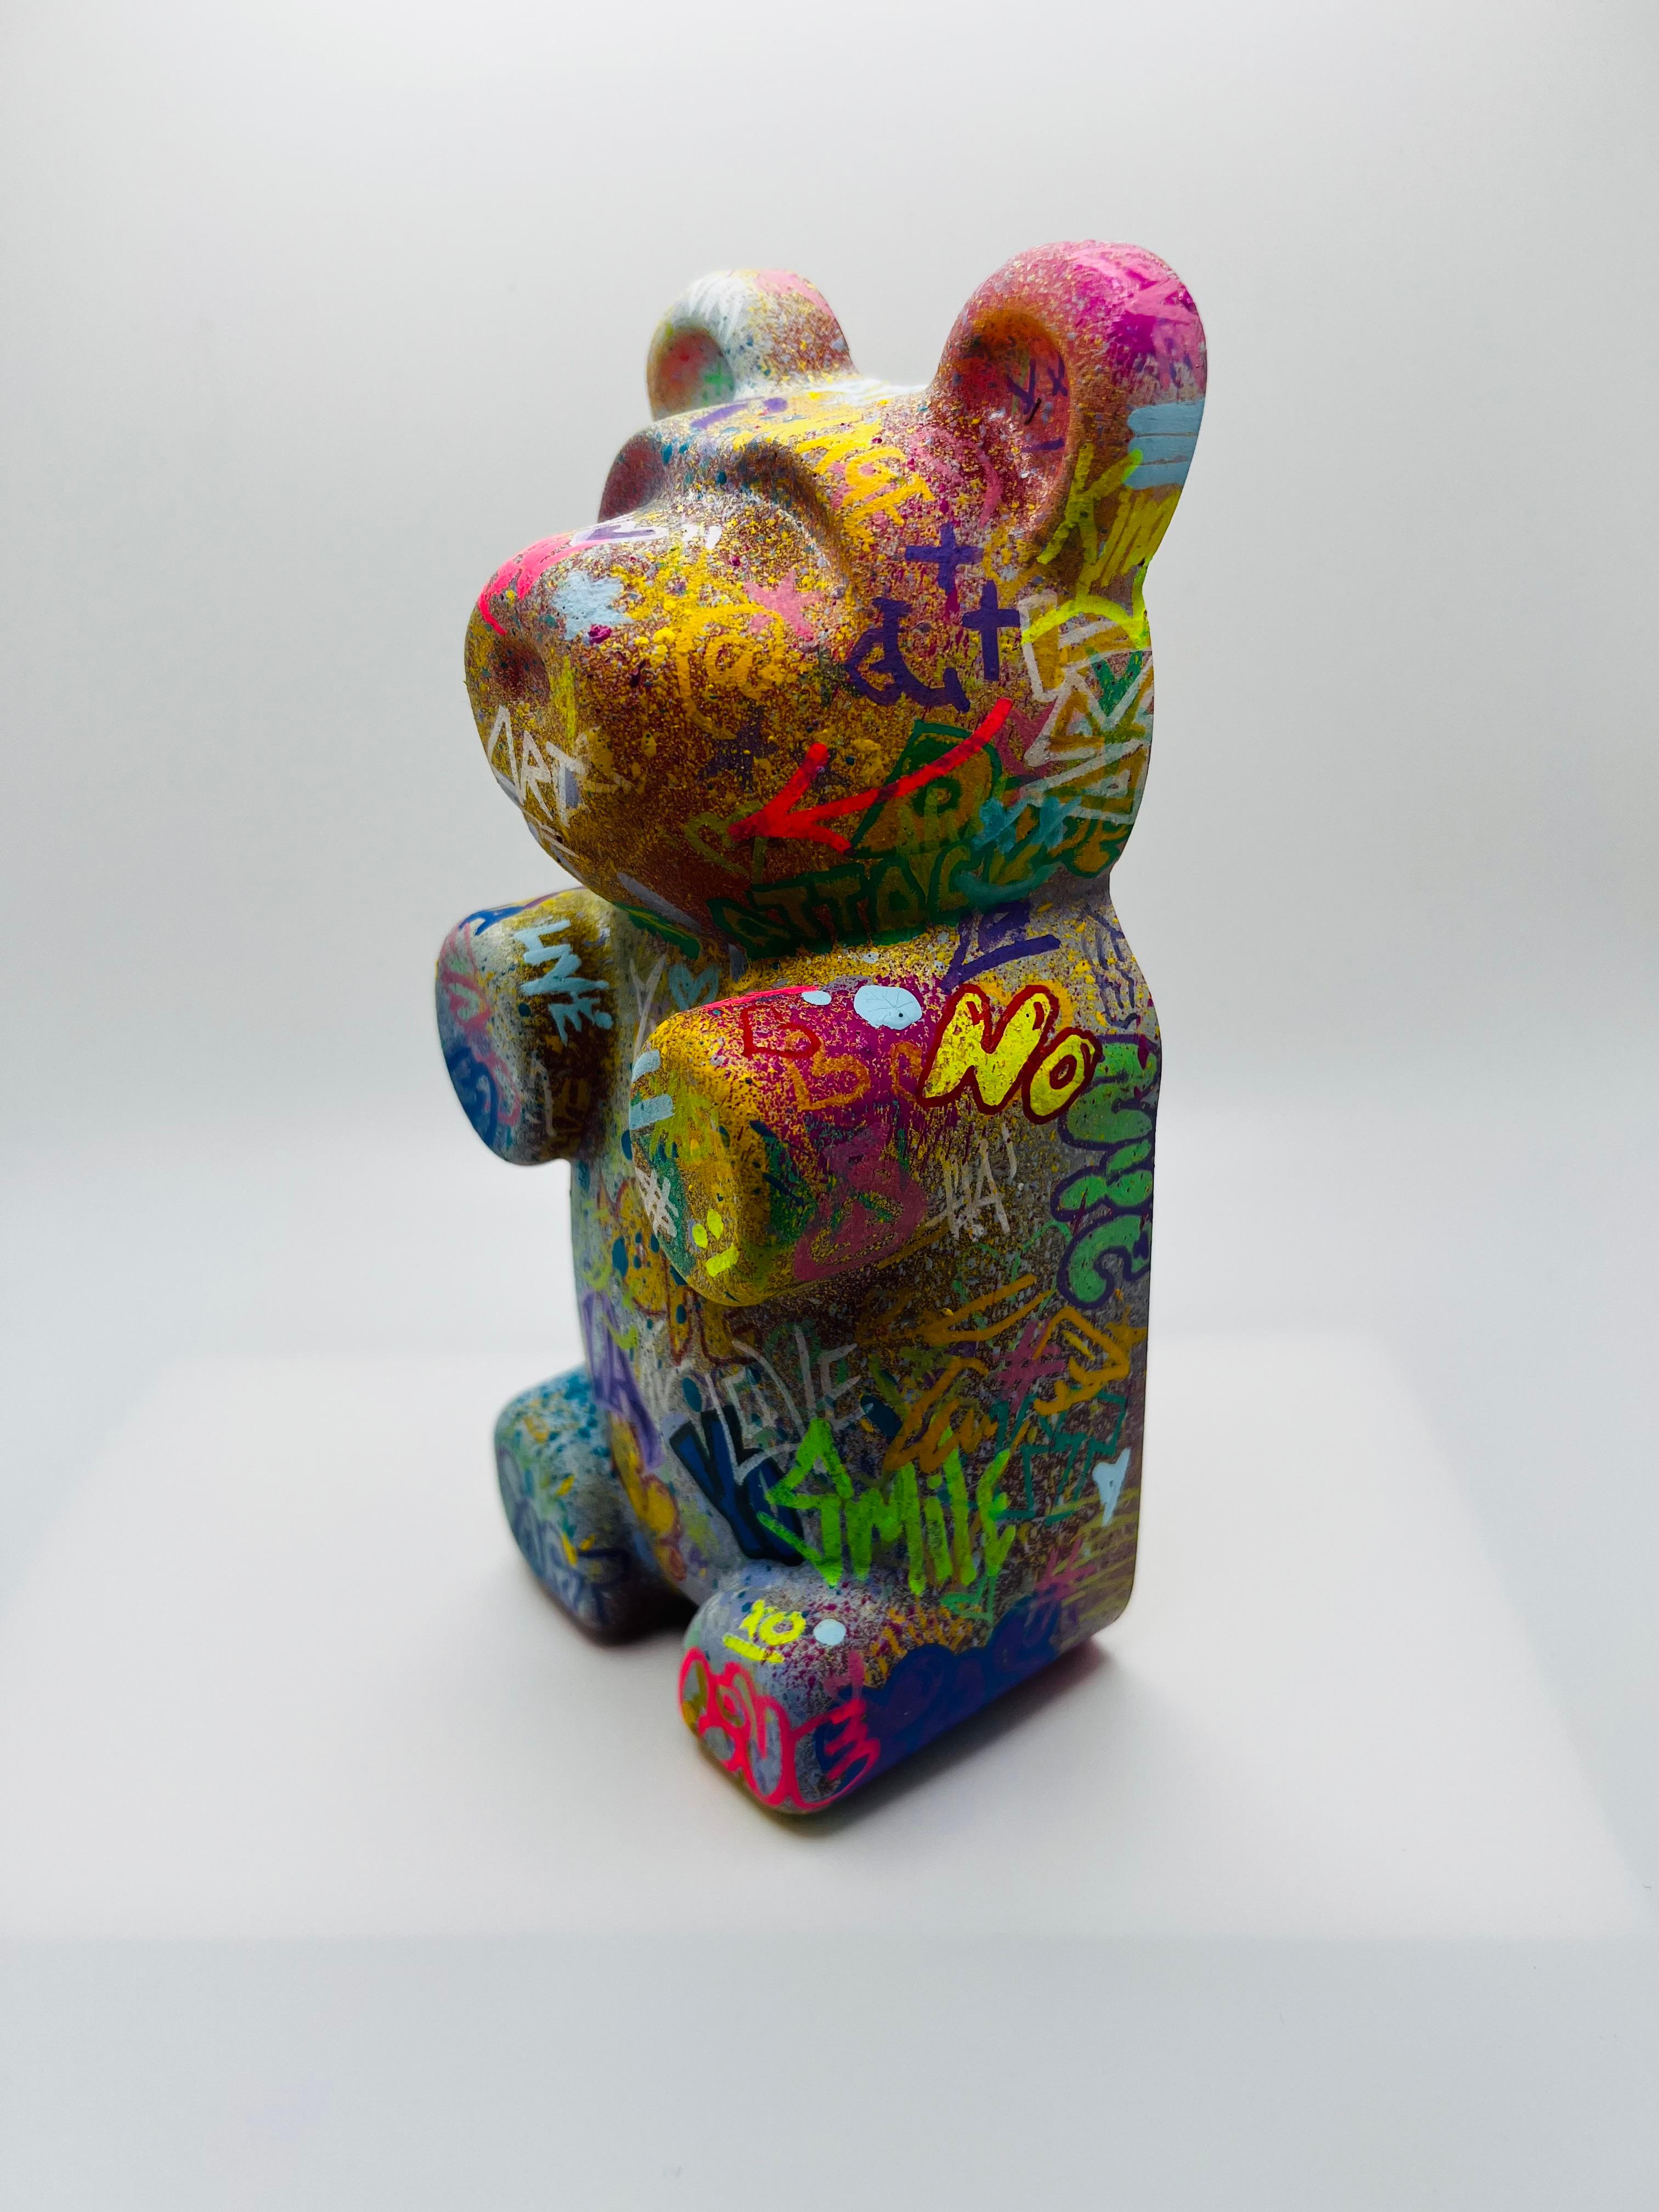 Graffiti Gummy bear 2, street art, pop art, colorful, contemporary, sculpture